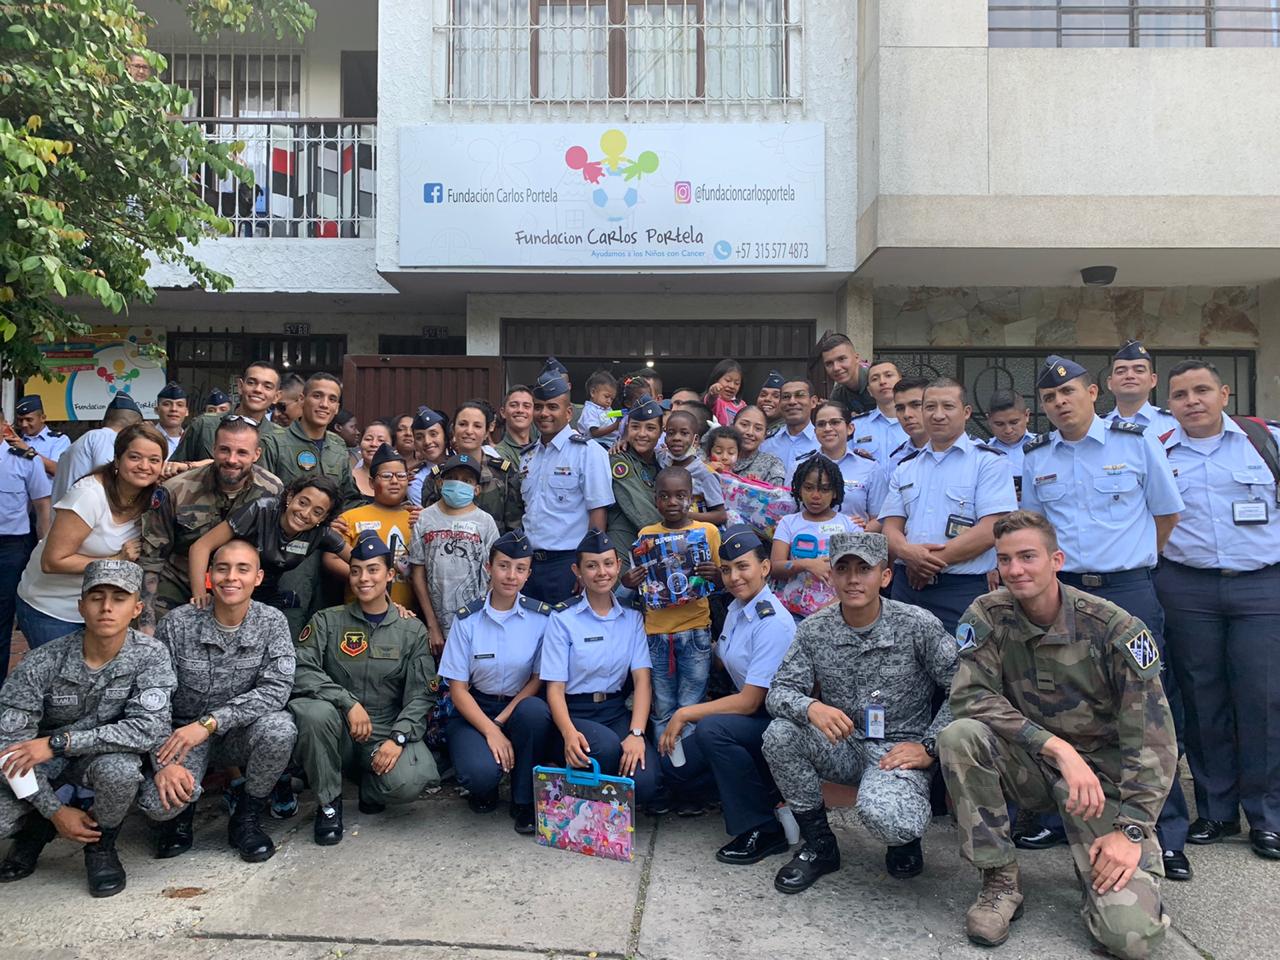 Sonrisas, sorpresas y alegría, así disfrutaron los niños de la Fundación Carlos Pórtela con los cadetes de EMAVI